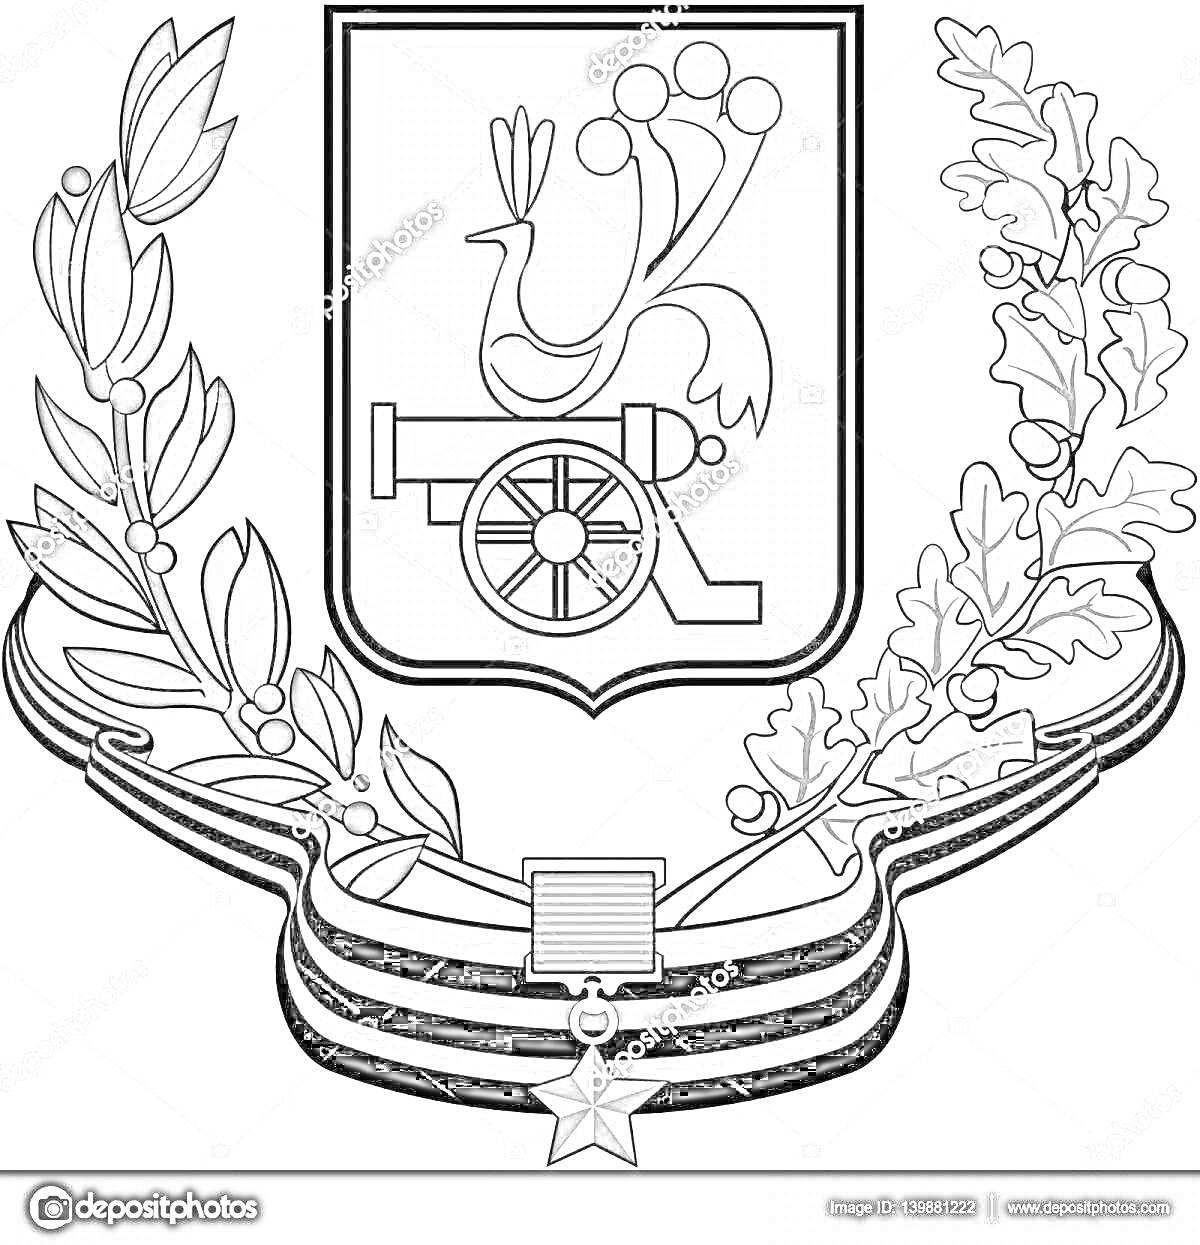 Раскраска Герб Смоленска с геральдическим щитом, пушкой, птицей, дубовыми и лавровыми ветвями, орденом